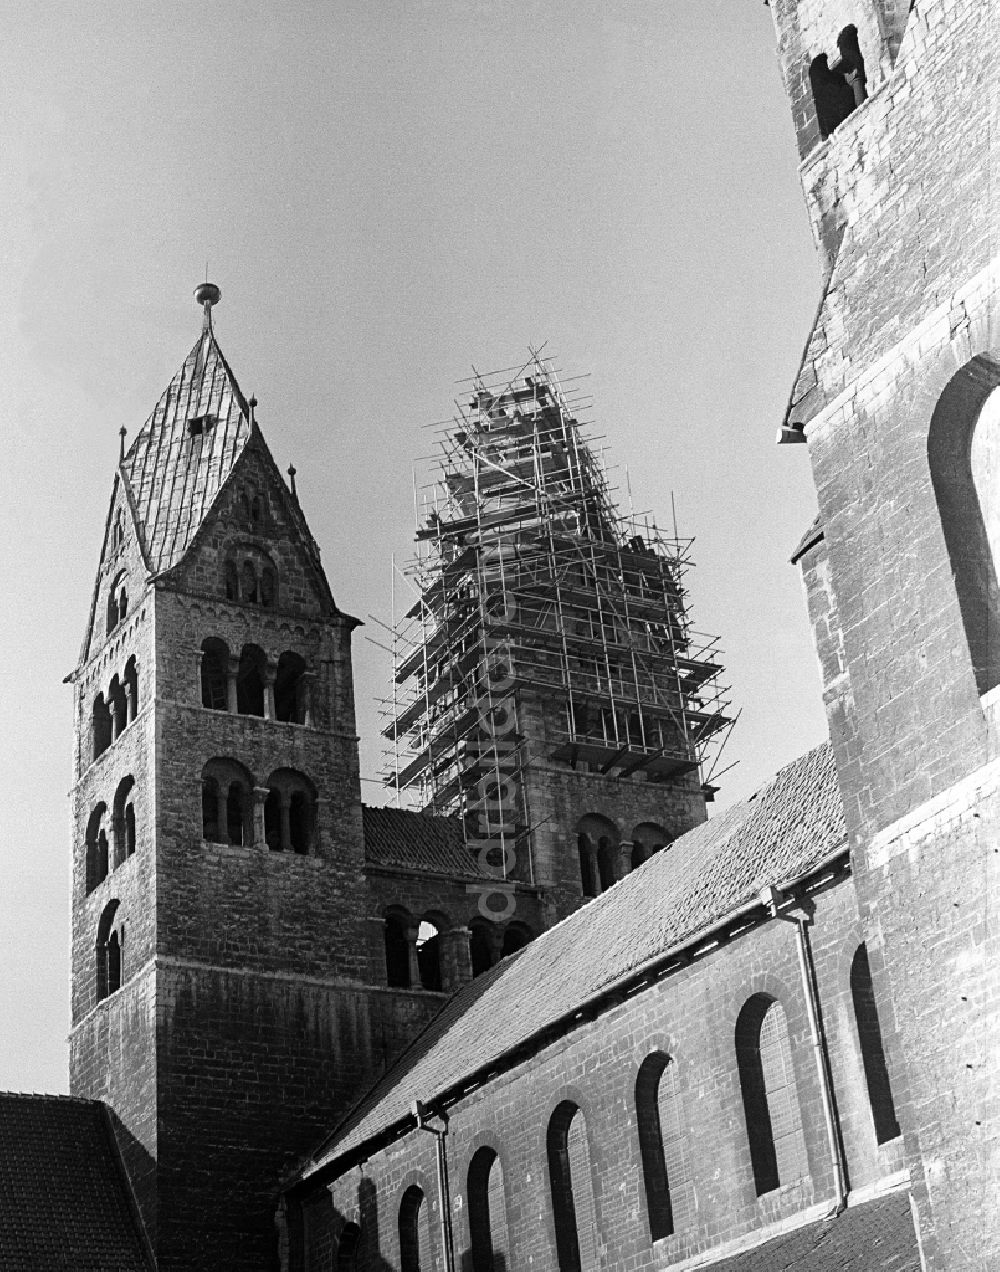 DDR-Bildarchiv: Halberstadt - Sanierung Glockenturm der Kirche Liebfrauenkirche in Halberstadt in Sachsen-Anhalt in der DDR